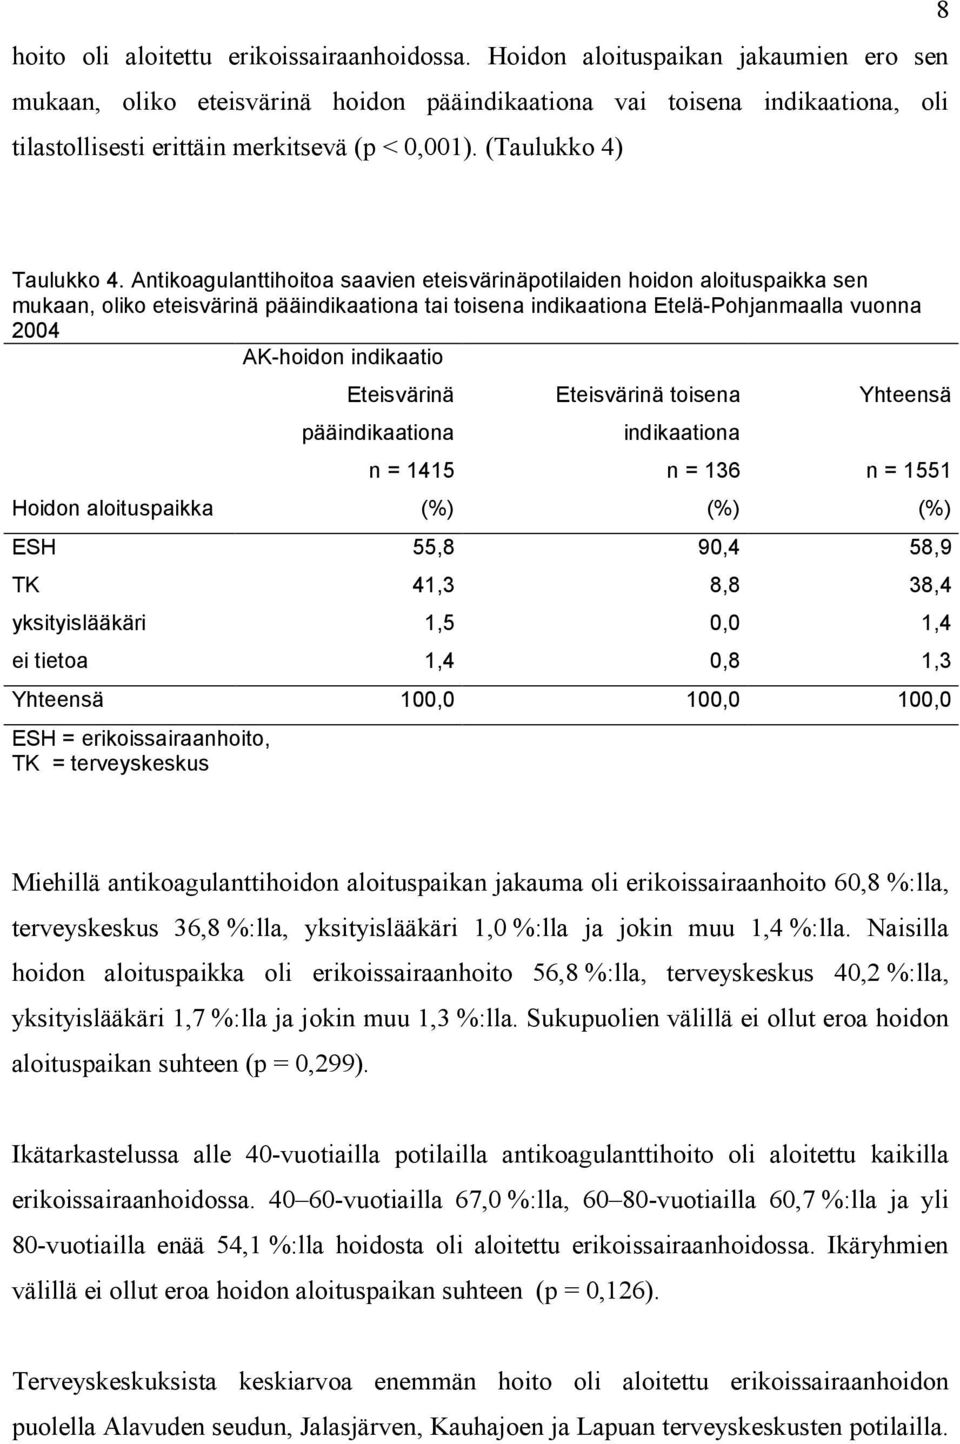 Antikoagulanttihoitoa saavien eteisvärinäpotilaiden hoidon aloituspaikka sen mukaan, oliko eteisvärinä pääindikaationa tai toisena indikaationa Etelä-Pohjanmaalla vuonna 2004 AK-hoidon indikaatio